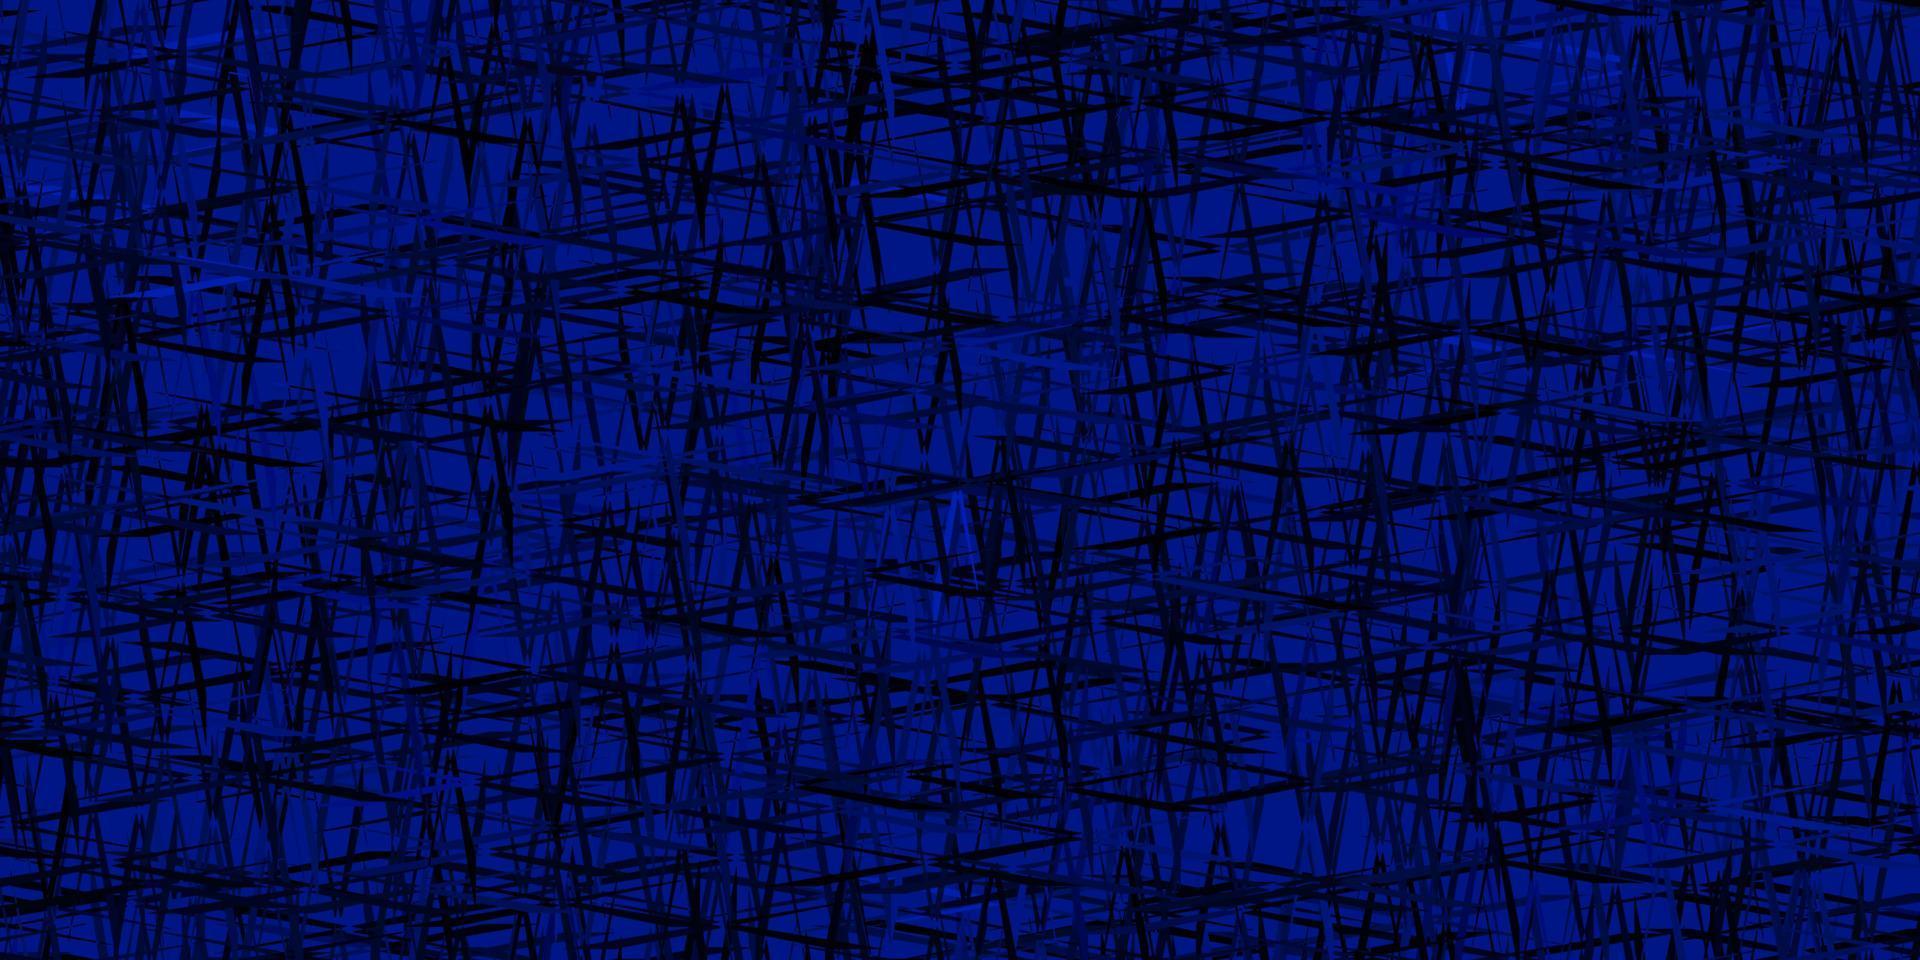 trama vettoriale blu scuro con linee colorate.